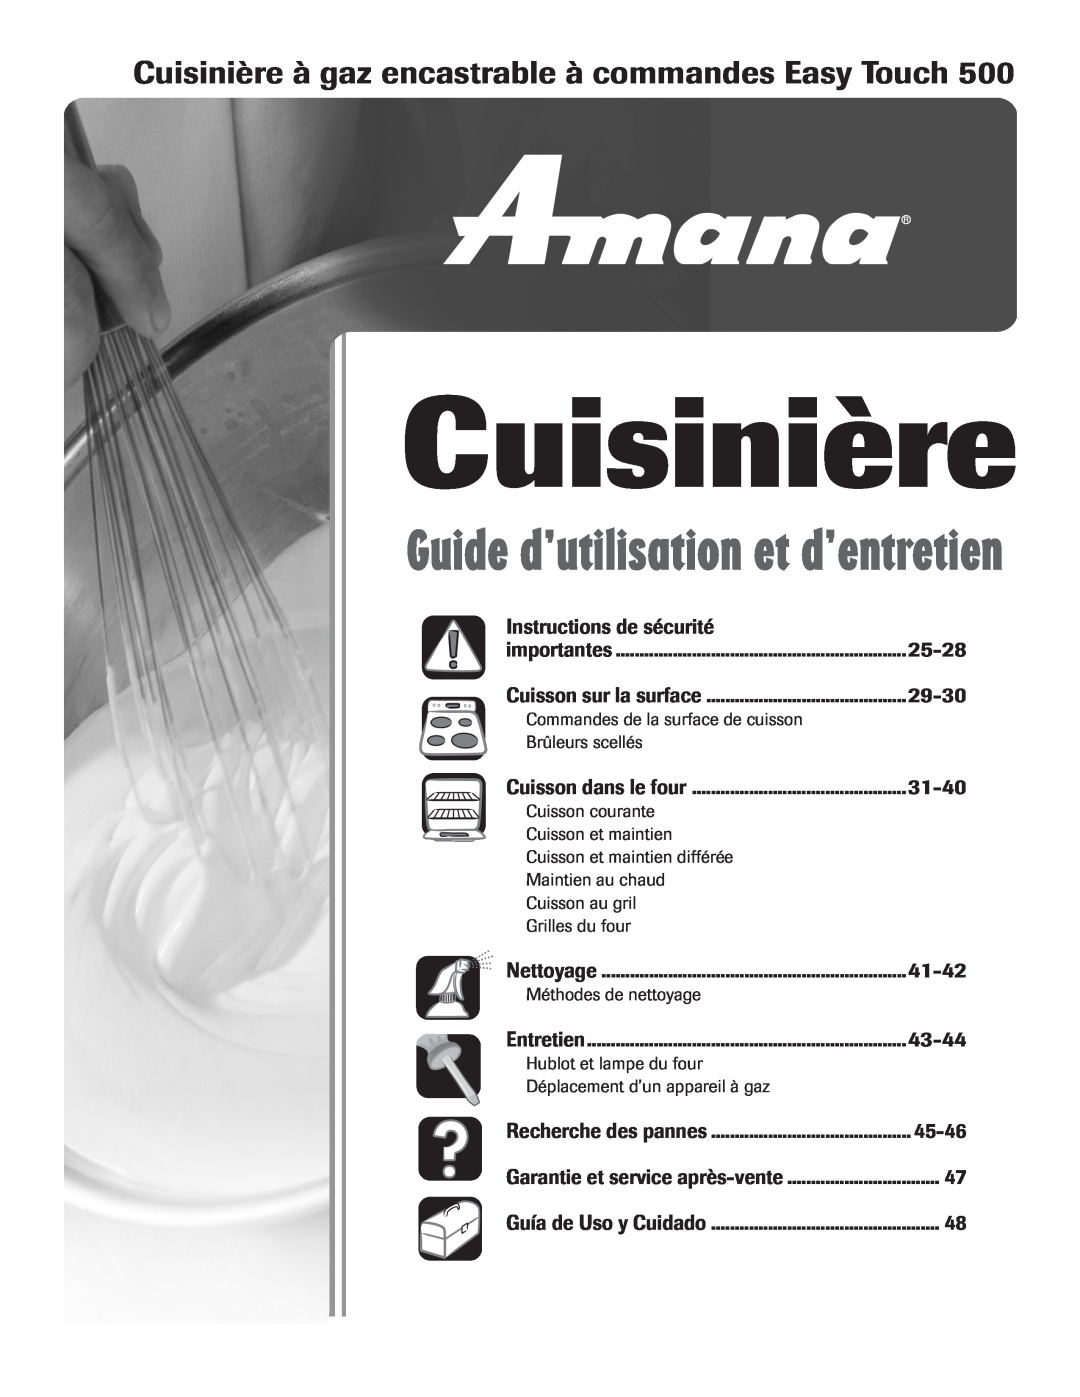 Amana 500 Cuisinière à gaz encastrable à commandes Easy Touch, Instructions de sécurité, 25-28, 29-30, 31-40, 41-42, 43-44 